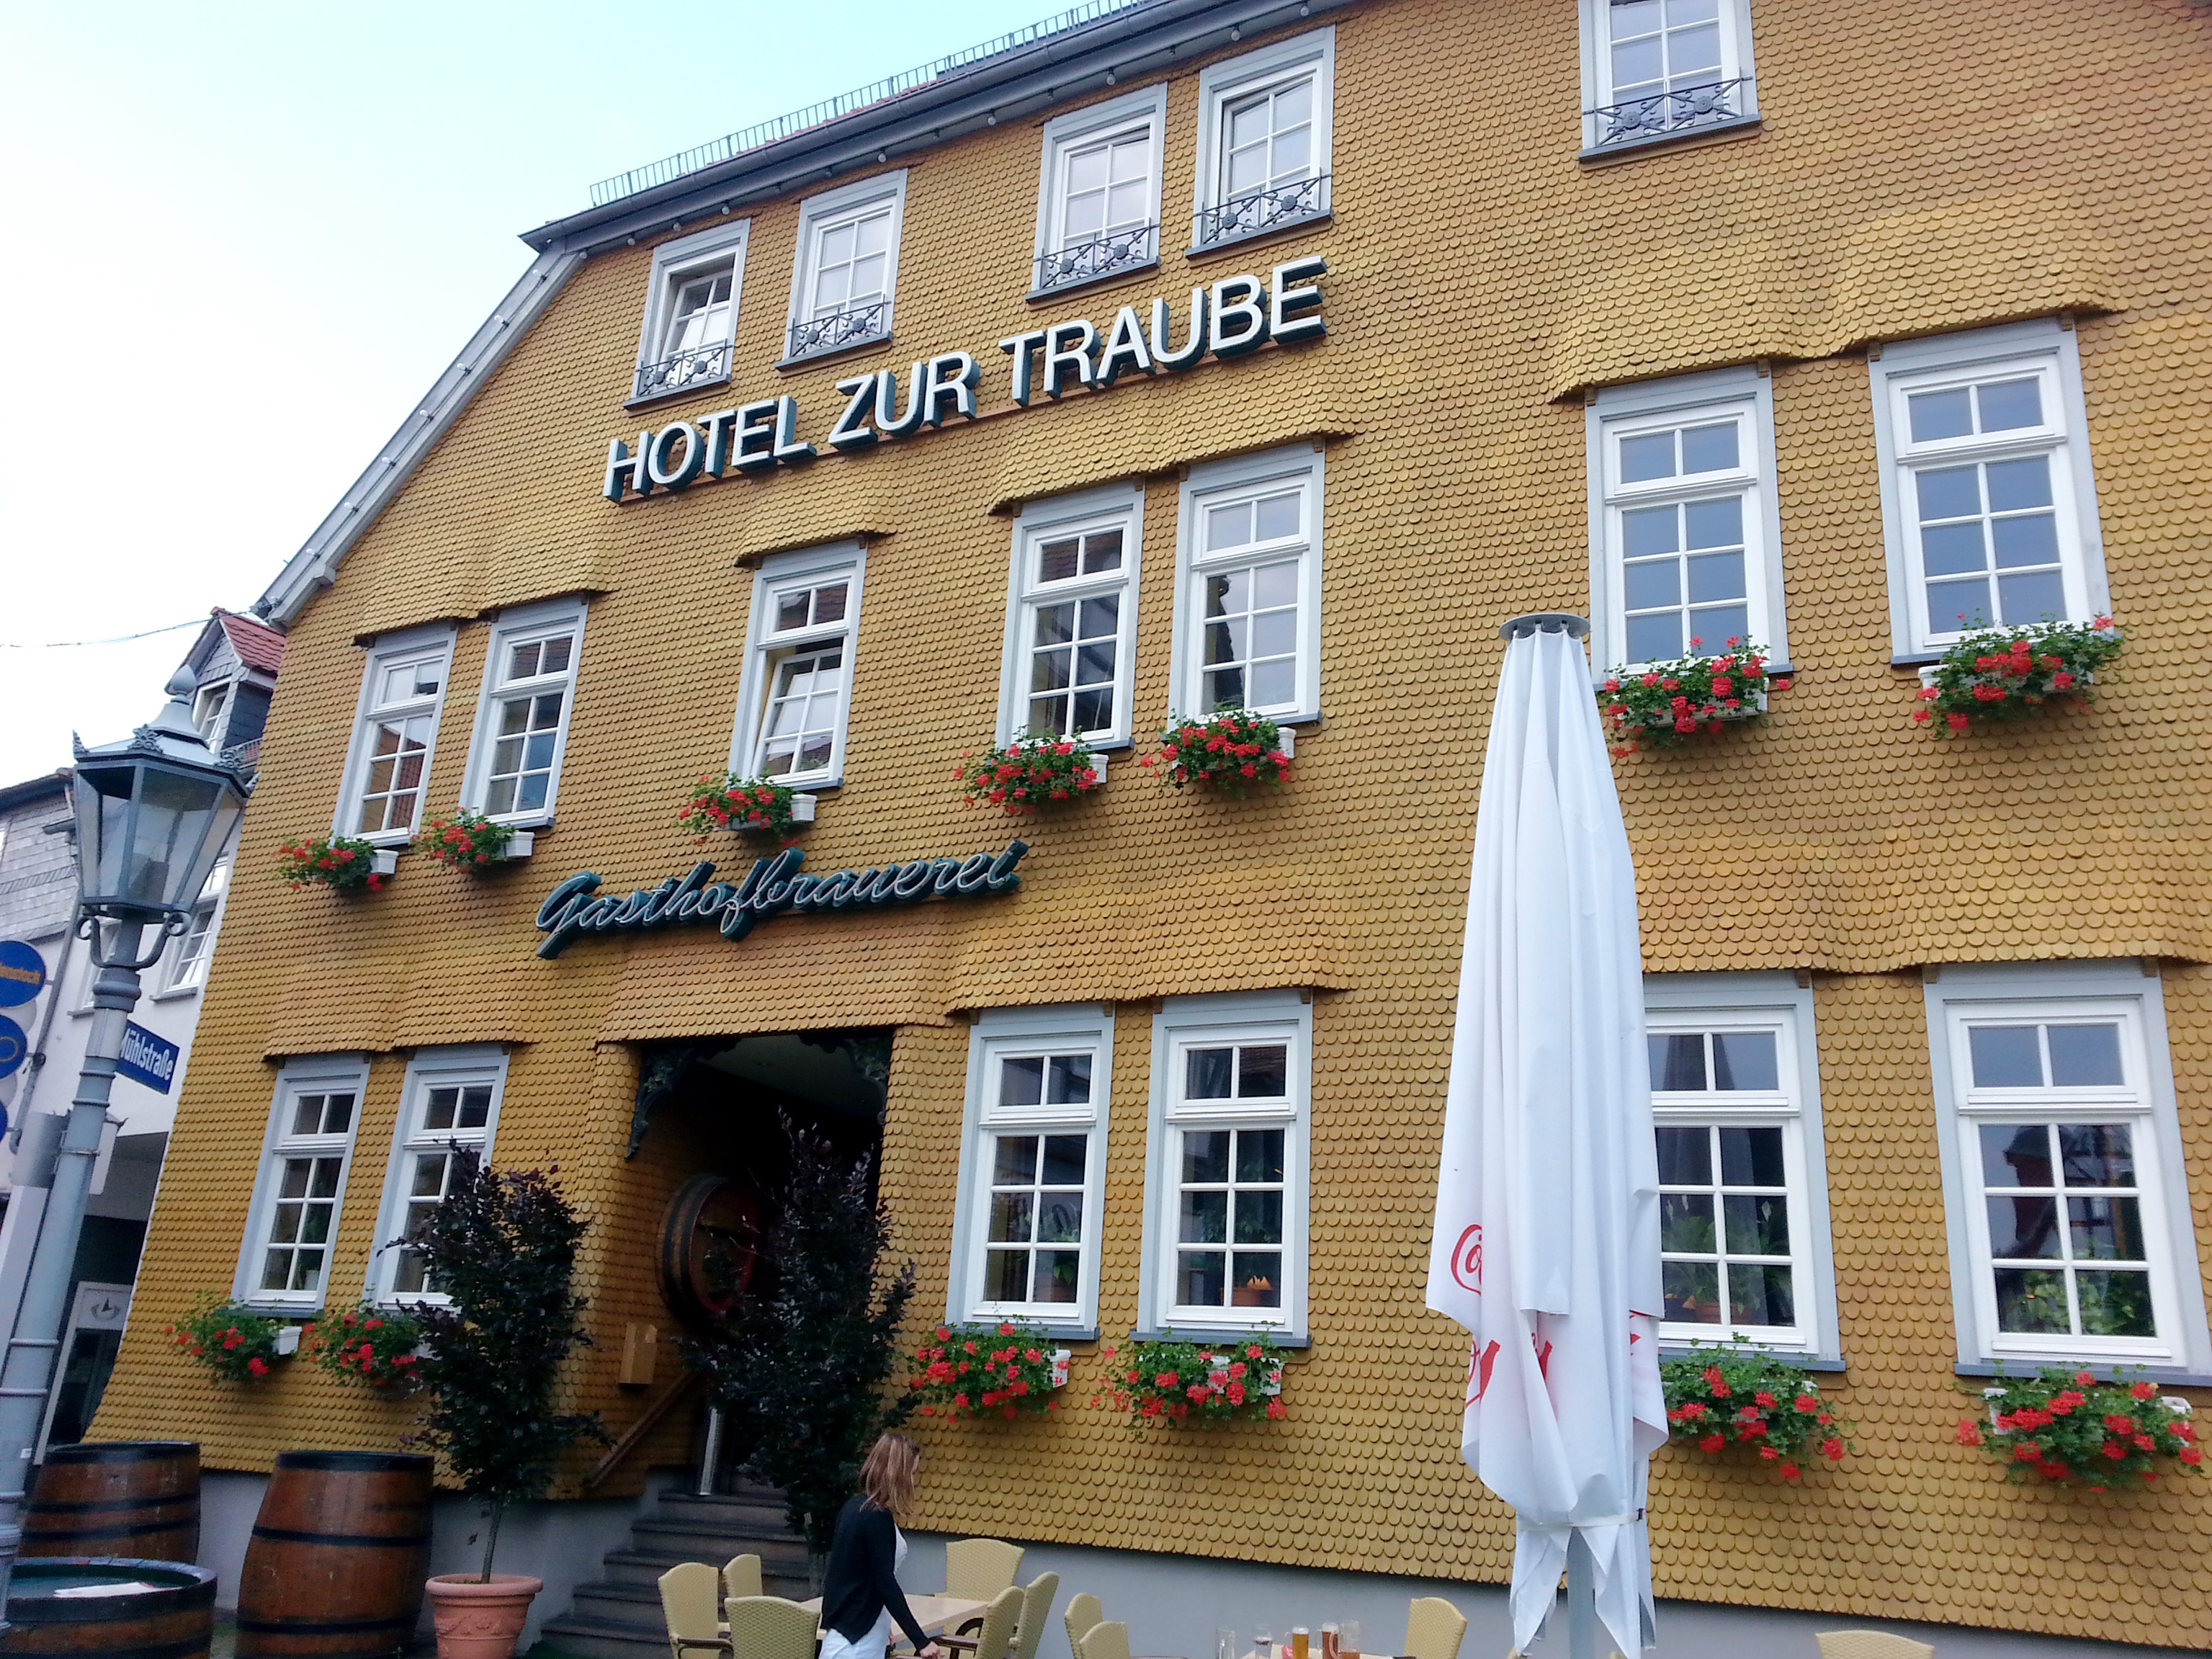 Hotel Zur Traube in Nidda.
